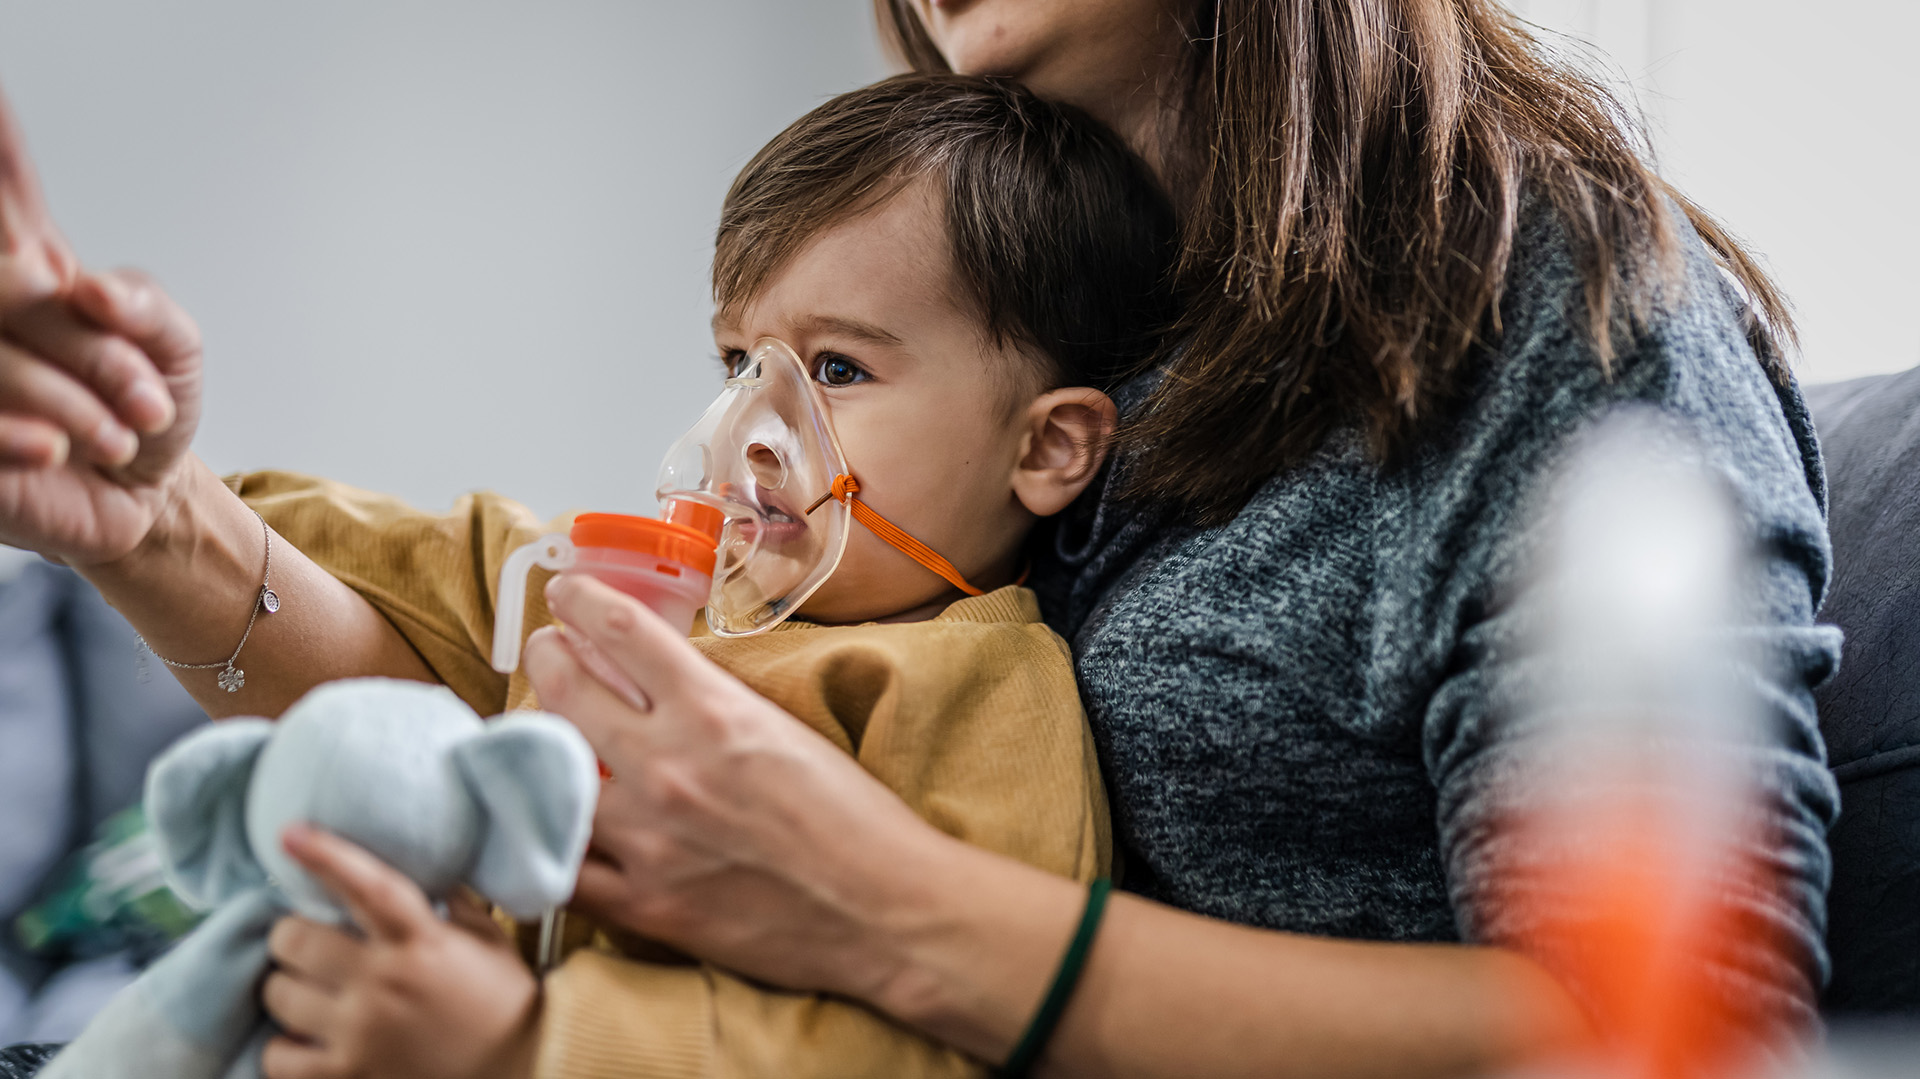 La bronquiolitis es una infección respiratoria aguda que ocurre con mayor frecuencia en los meses de otoño-invierno y afecta sobre todo a los menores de 1 año (Getty Images)